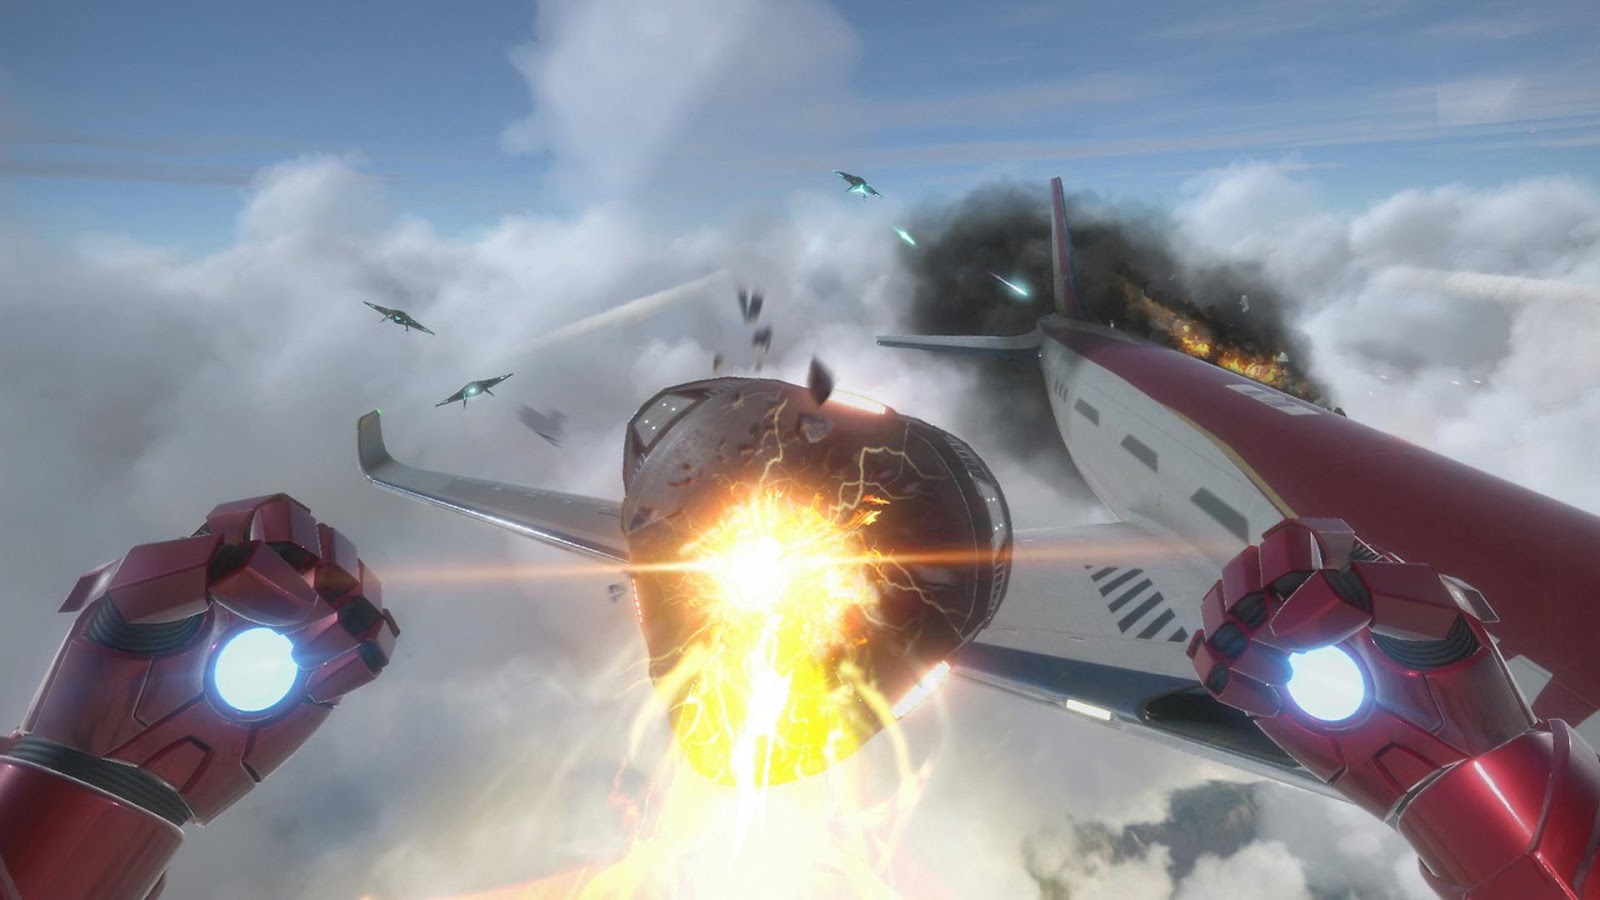 Game PS VR paling apik: Wong wesi katon nglawan soko ing ndhuwur pesawat